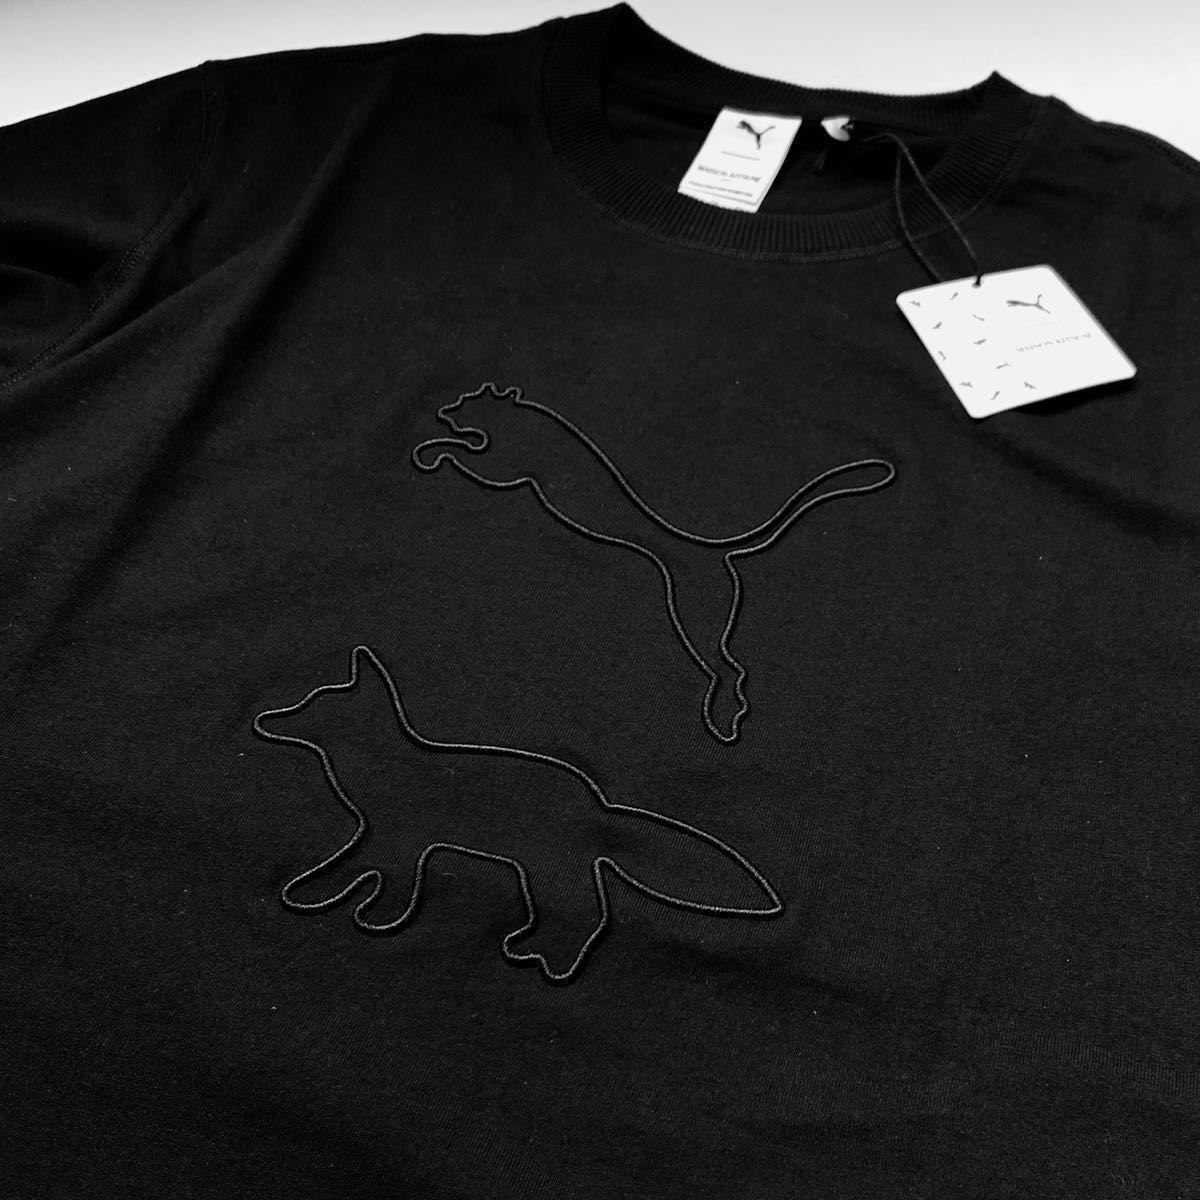 M новый товар редкость mezzo n лисица Puma PUMA x Maison Kitsune сотрудничество вышивка лиса футболка мужской чёрный черный редкий с биркой бесплатная доставка 